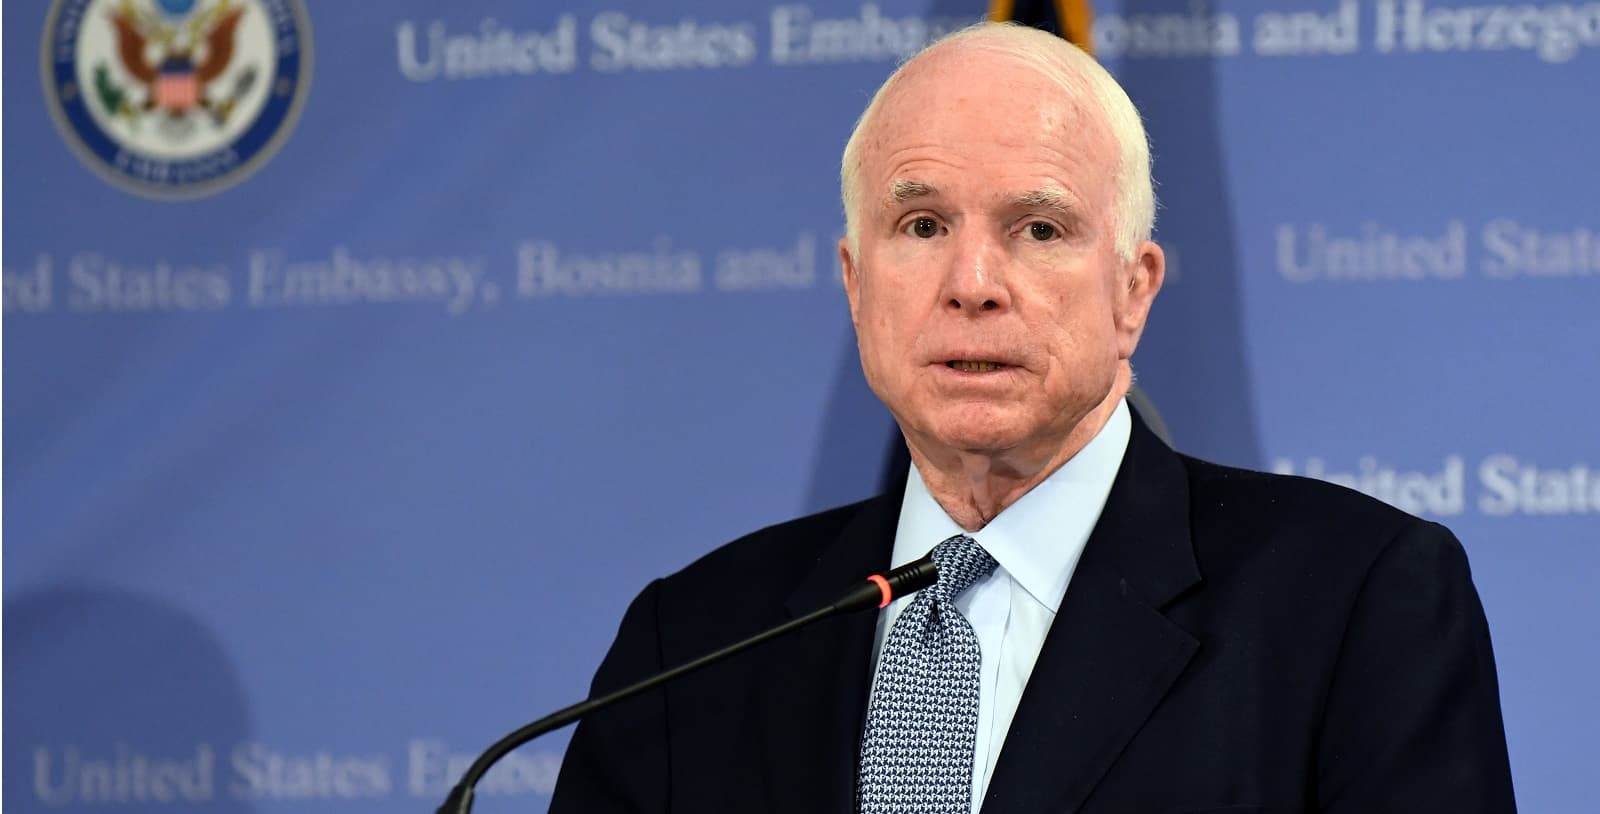 Káº¿t quáº£ hÃ¬nh áº£nh cho John McCain